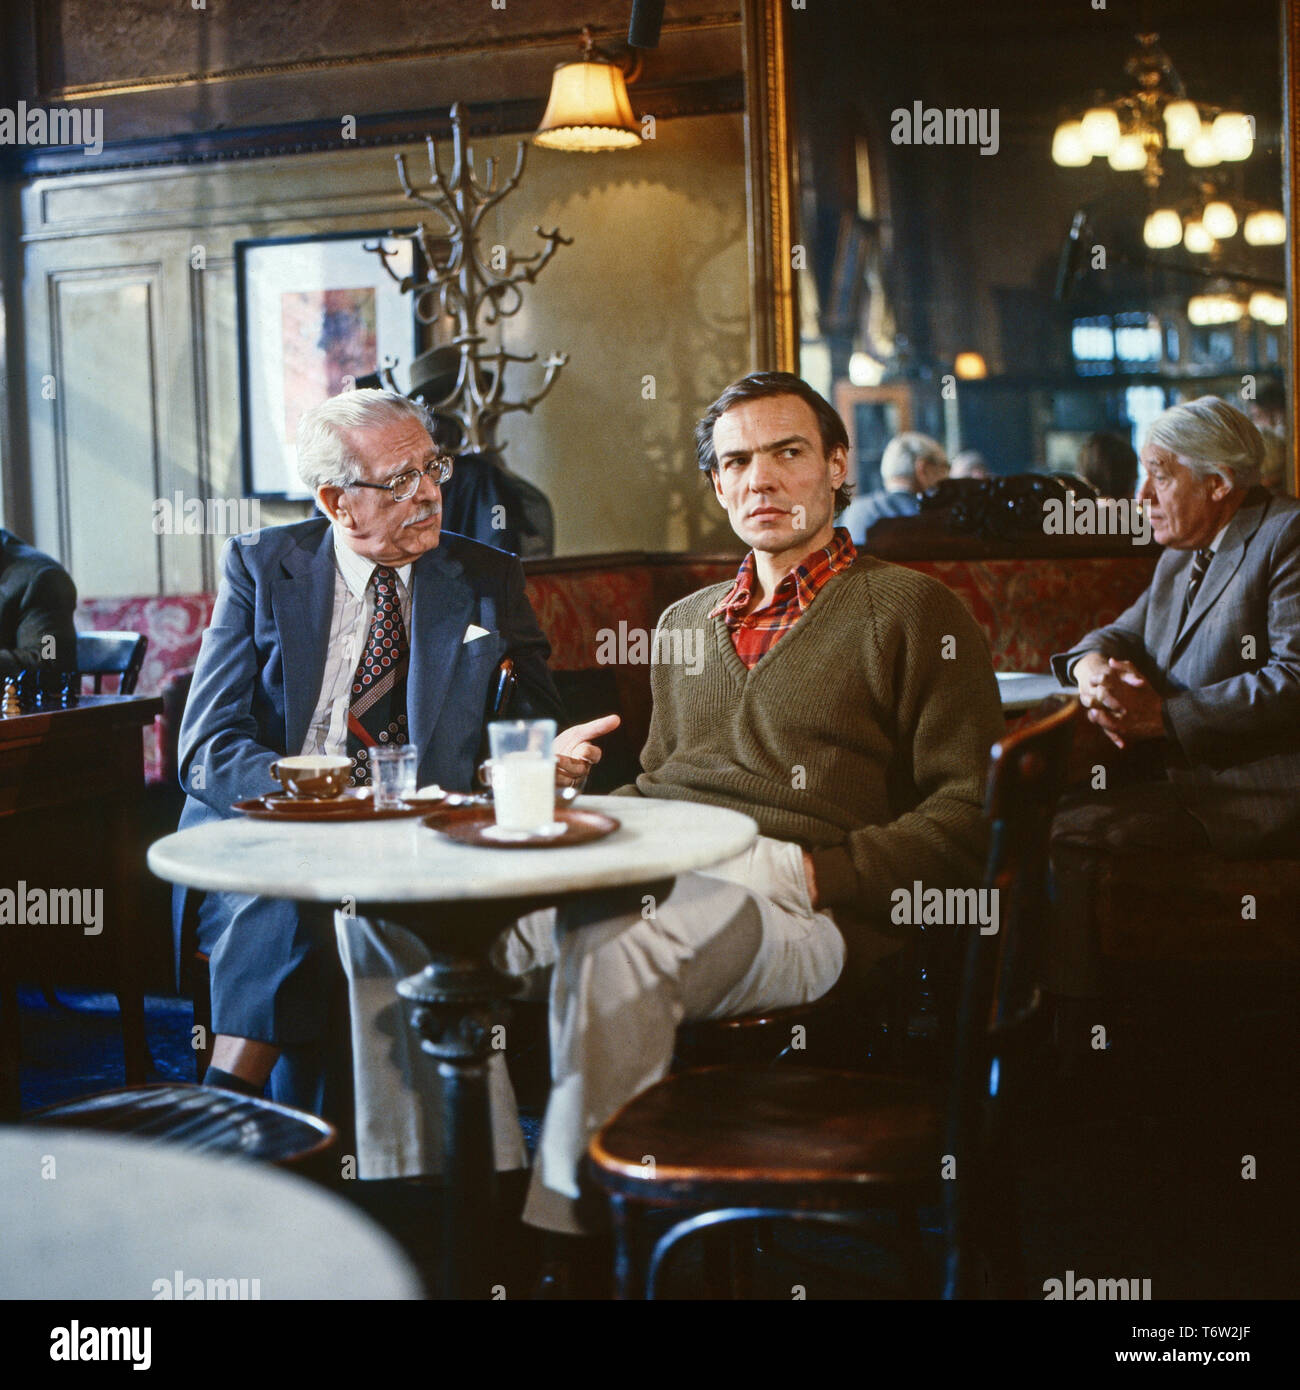 Am Ufer der Dämmerung, Fernsehfilm, Deutschland 1983, Regie: Jochen Richter, Darsteller: Franz Stoss, Hans Peter Hallwachs Stock Photo